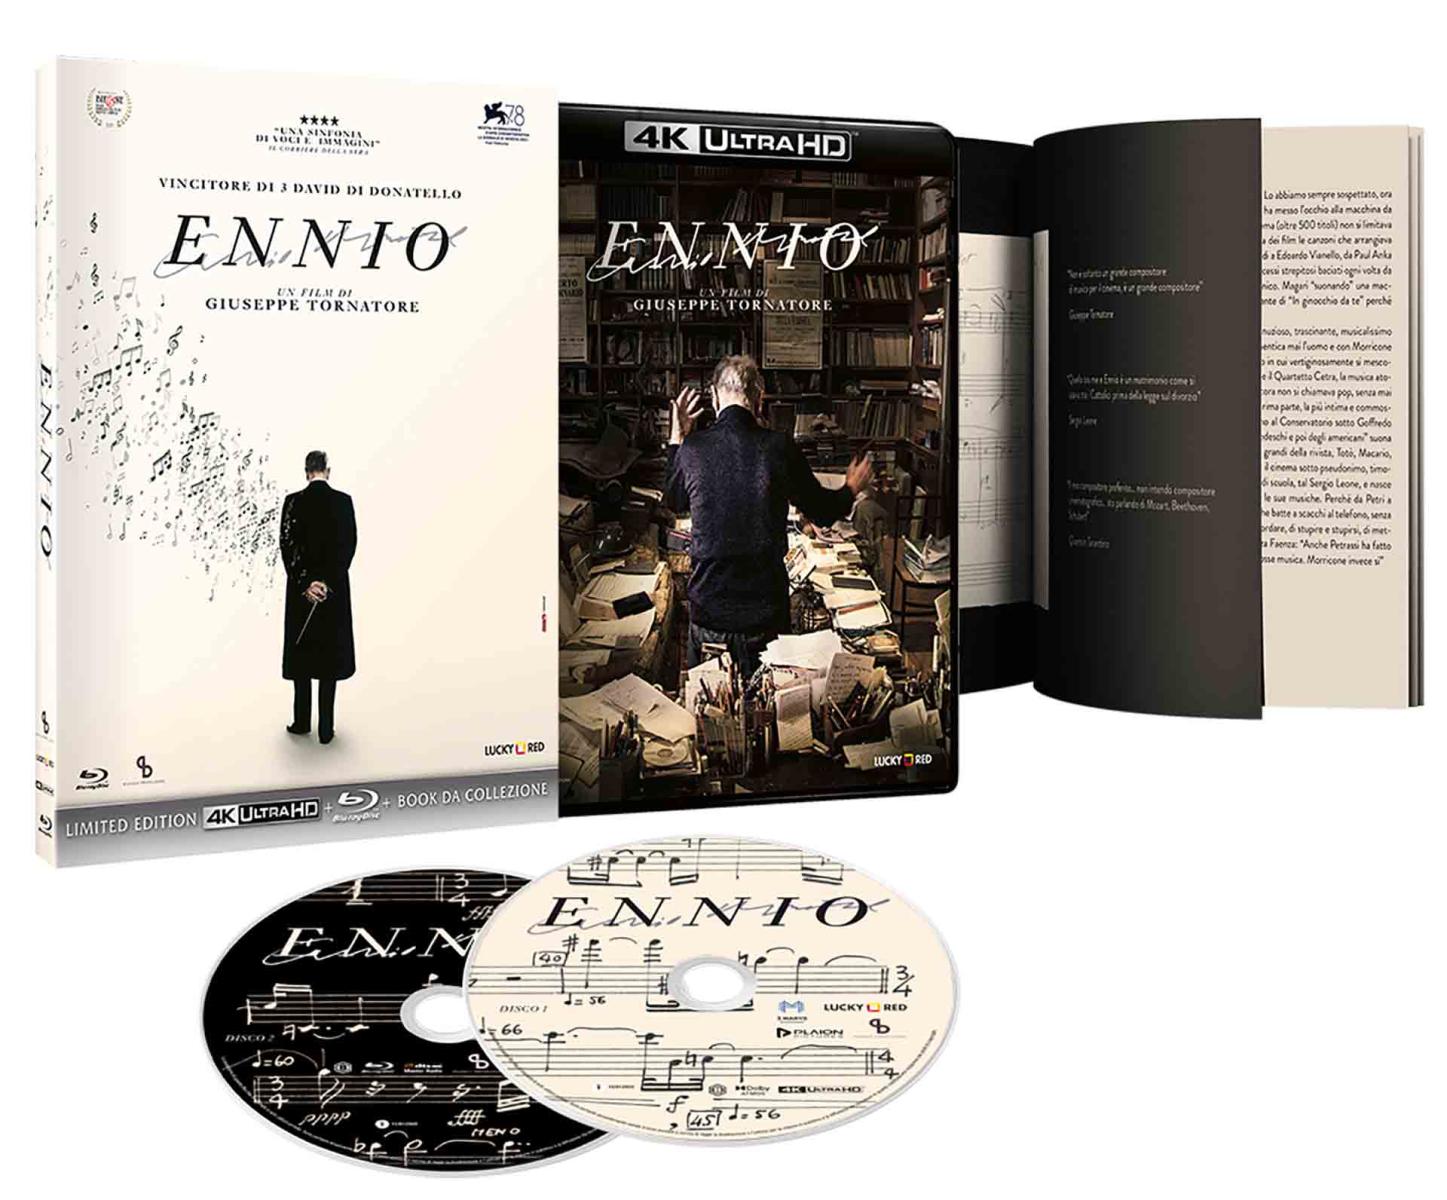 Ennio - Limited Edition 4K Ultra HD + Blu-ray (Blu-ray) Image 2